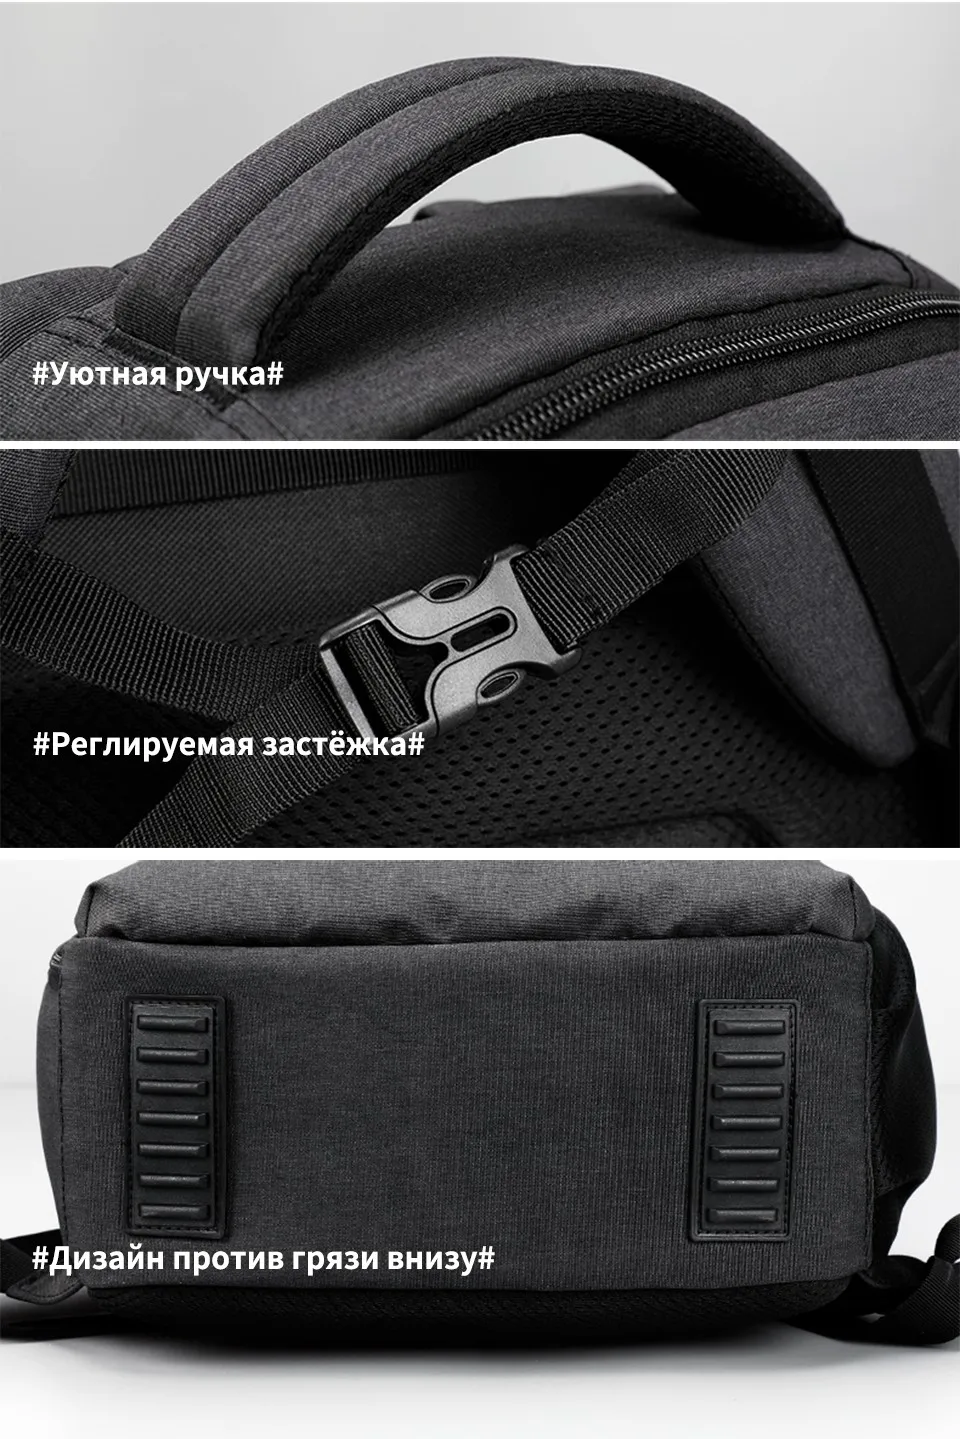 Tigernu бренд 15.6 дюймовый ноутбук рюкзак Водонепроницаемый Для мужчин Для женщин Рюкзаки Сельма унисекс школьные сумки рюкзак для подростков черный серый